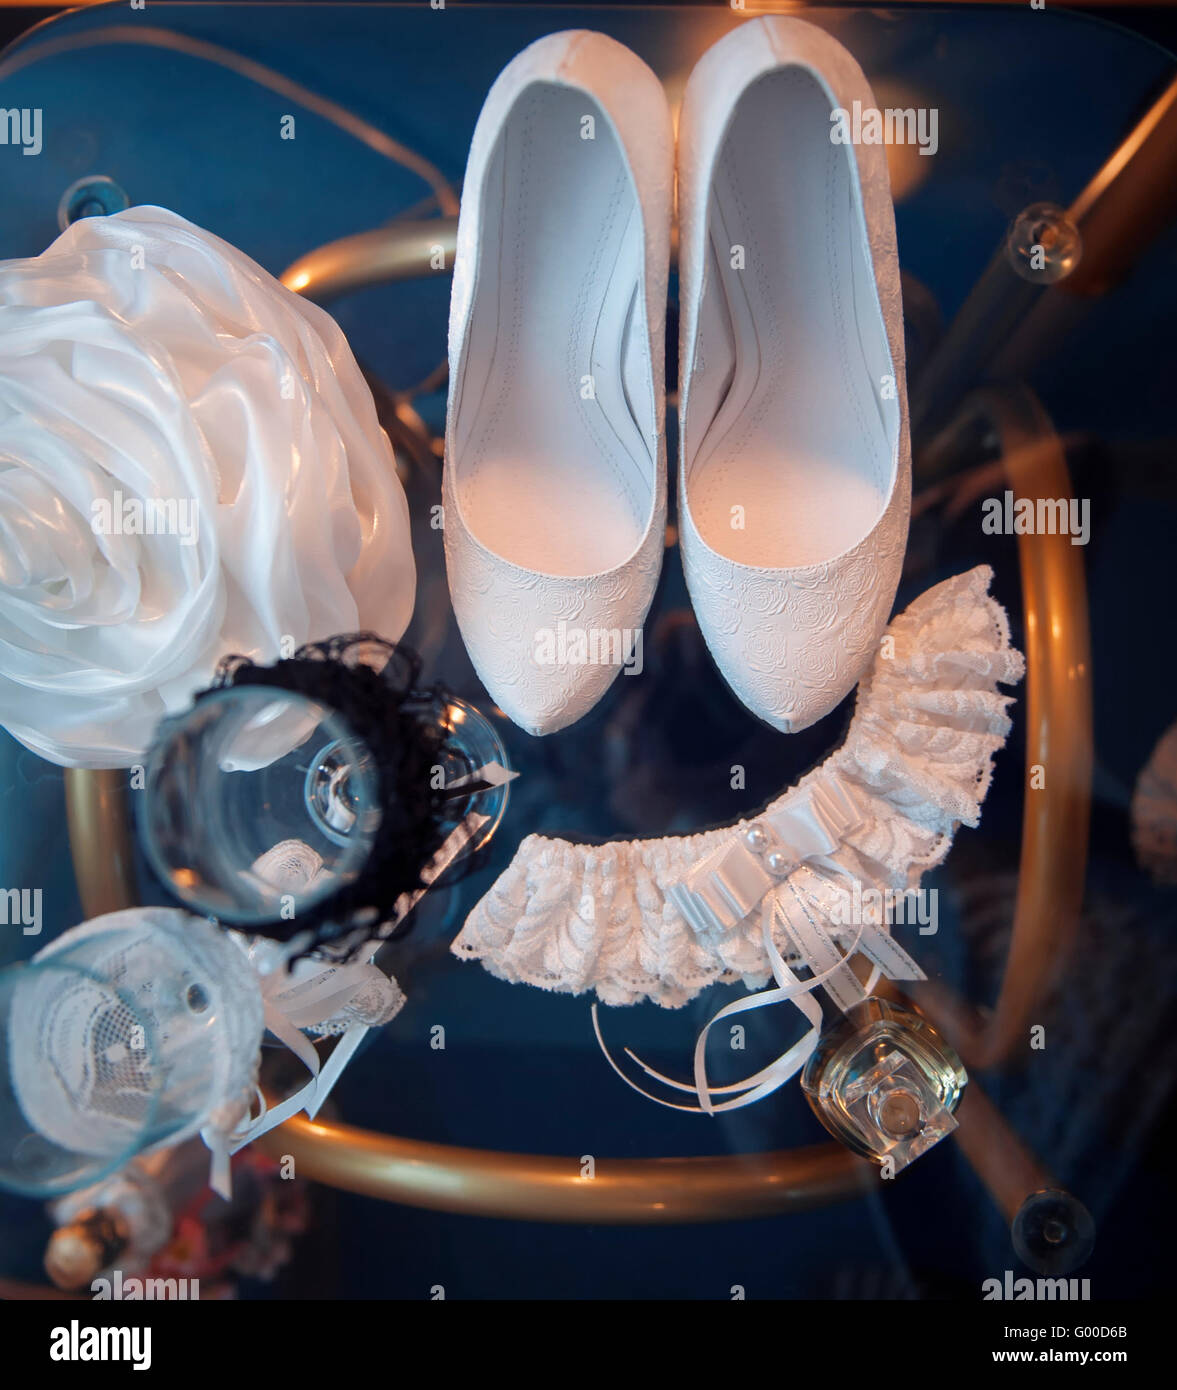 Bianco scarpe nuziale e altri attributi di nozze su un tavolo Foto Stock